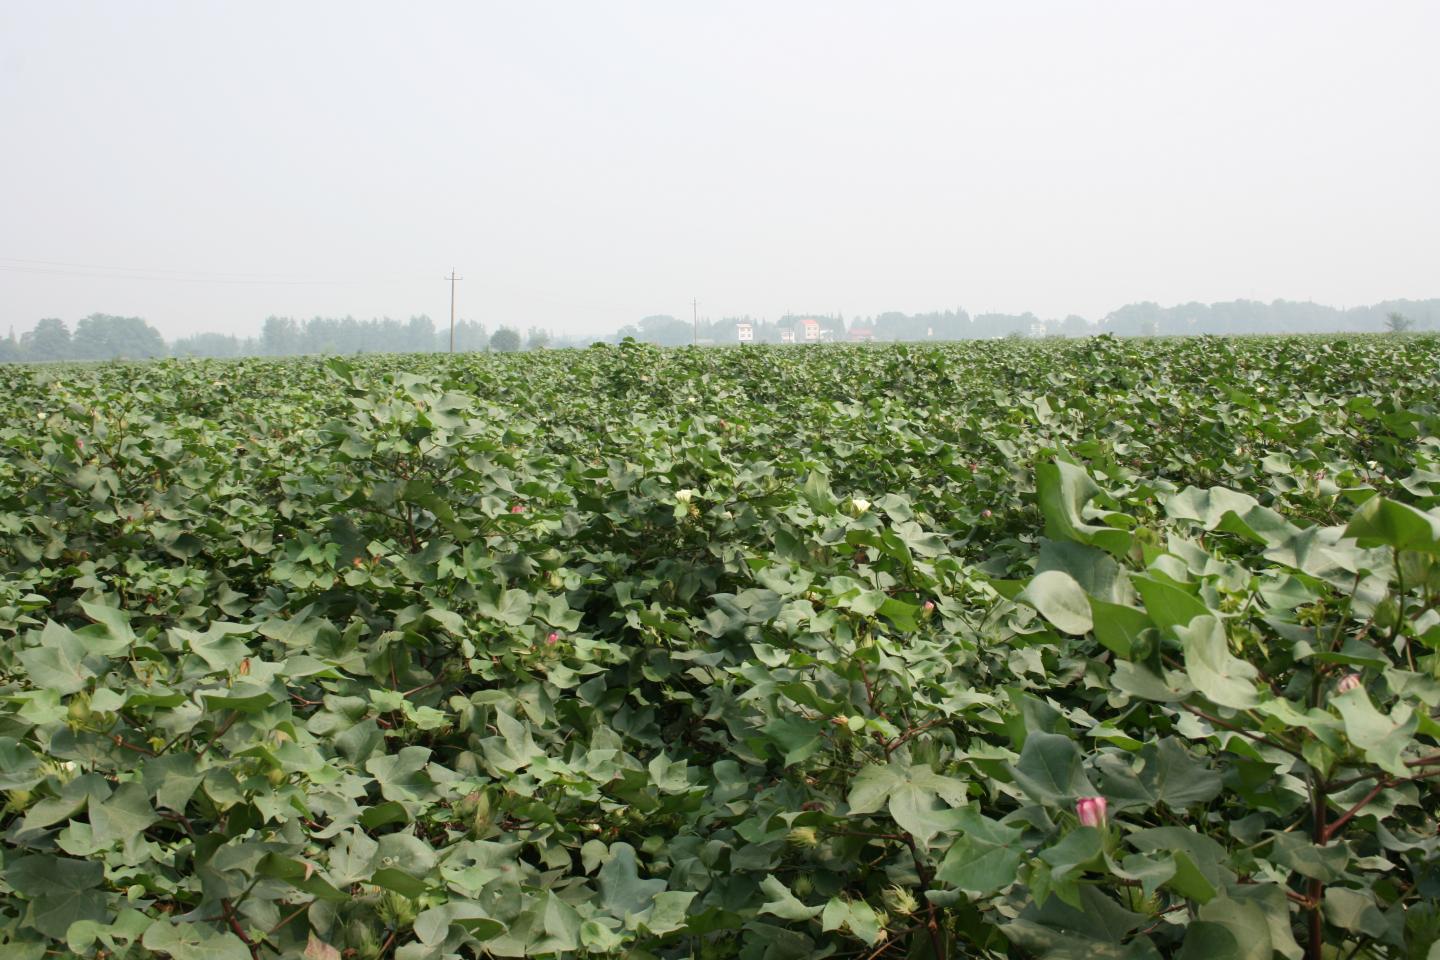 Cotton Field in Yangtze River Valley